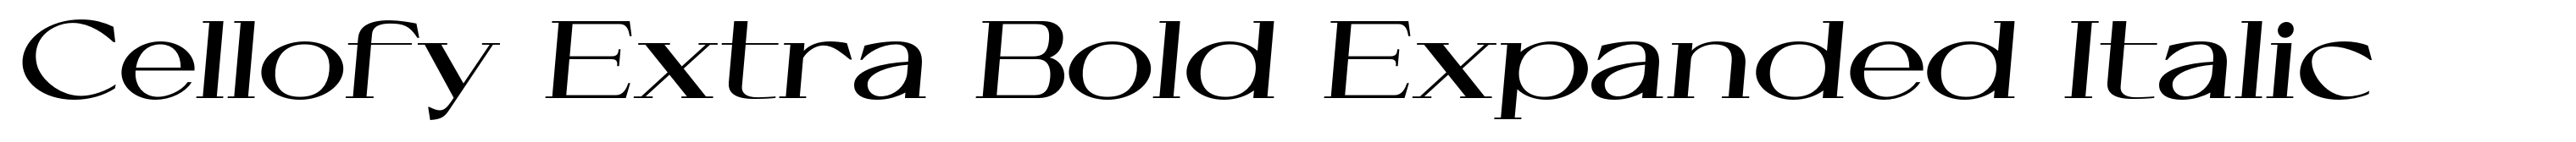 Cellofy Extra Bold Expanded Italic